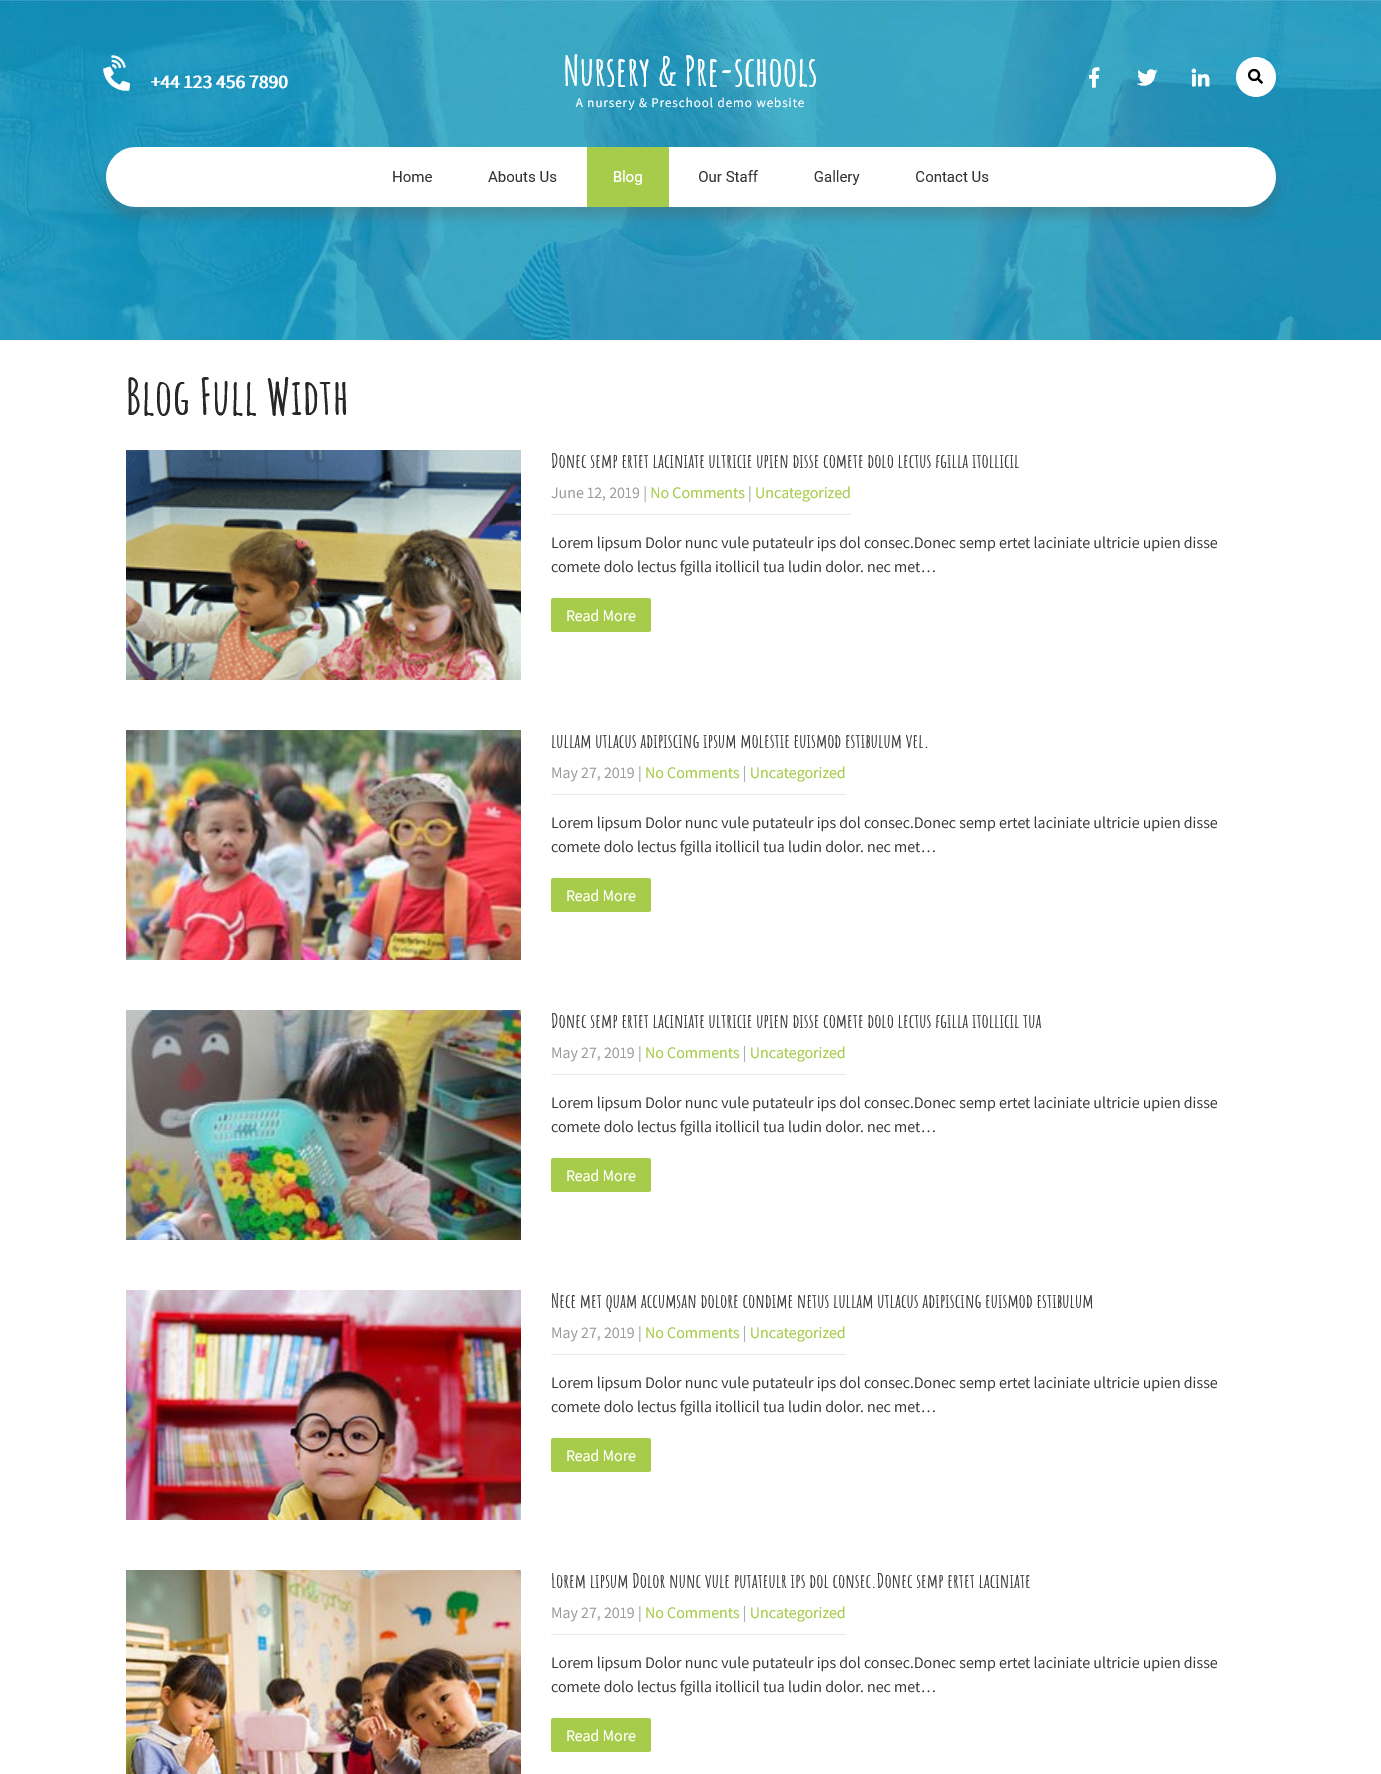 Demo Blog page of the pre-schools & nurseries websites